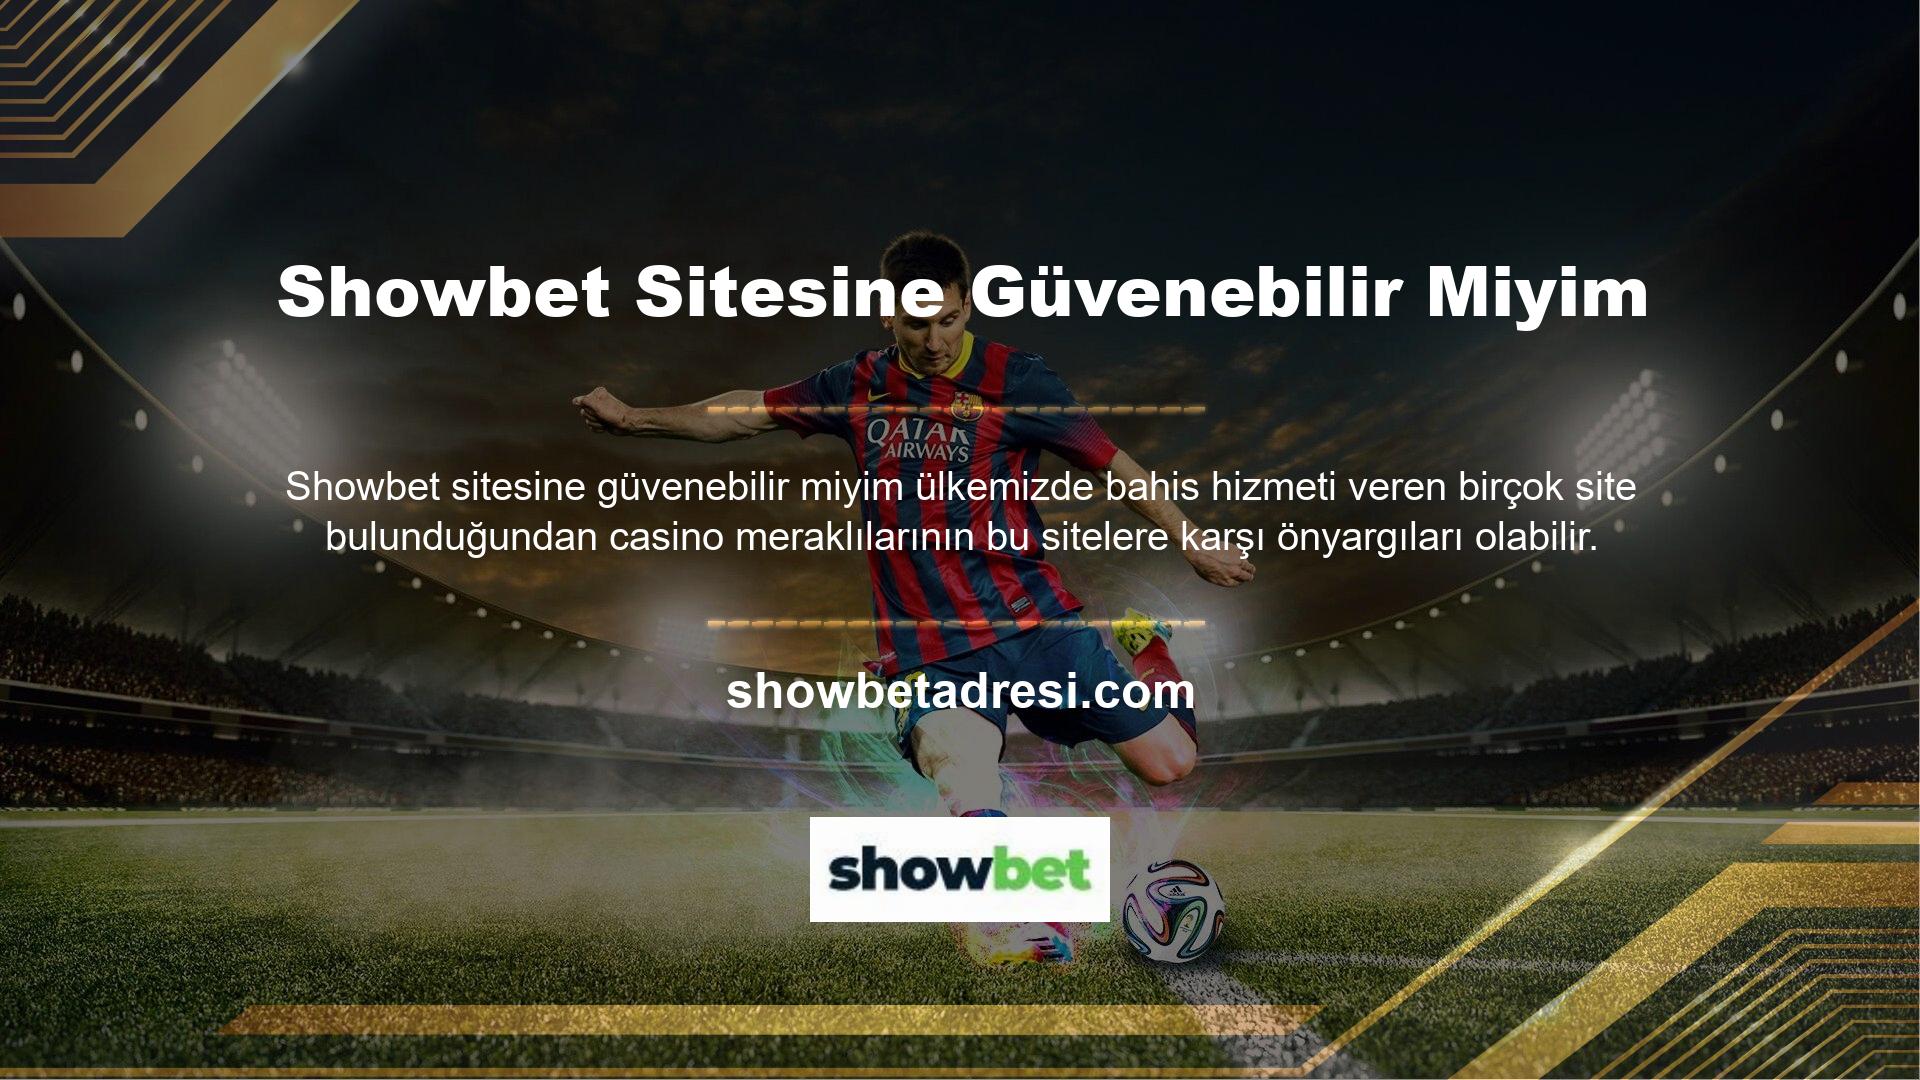 Türkiye'nin en güvenilir sitelerinden biri olan Showbet sitesi, piyasadaki yüzlerce site arasında öne çıkan, kaliteli bir sitedir